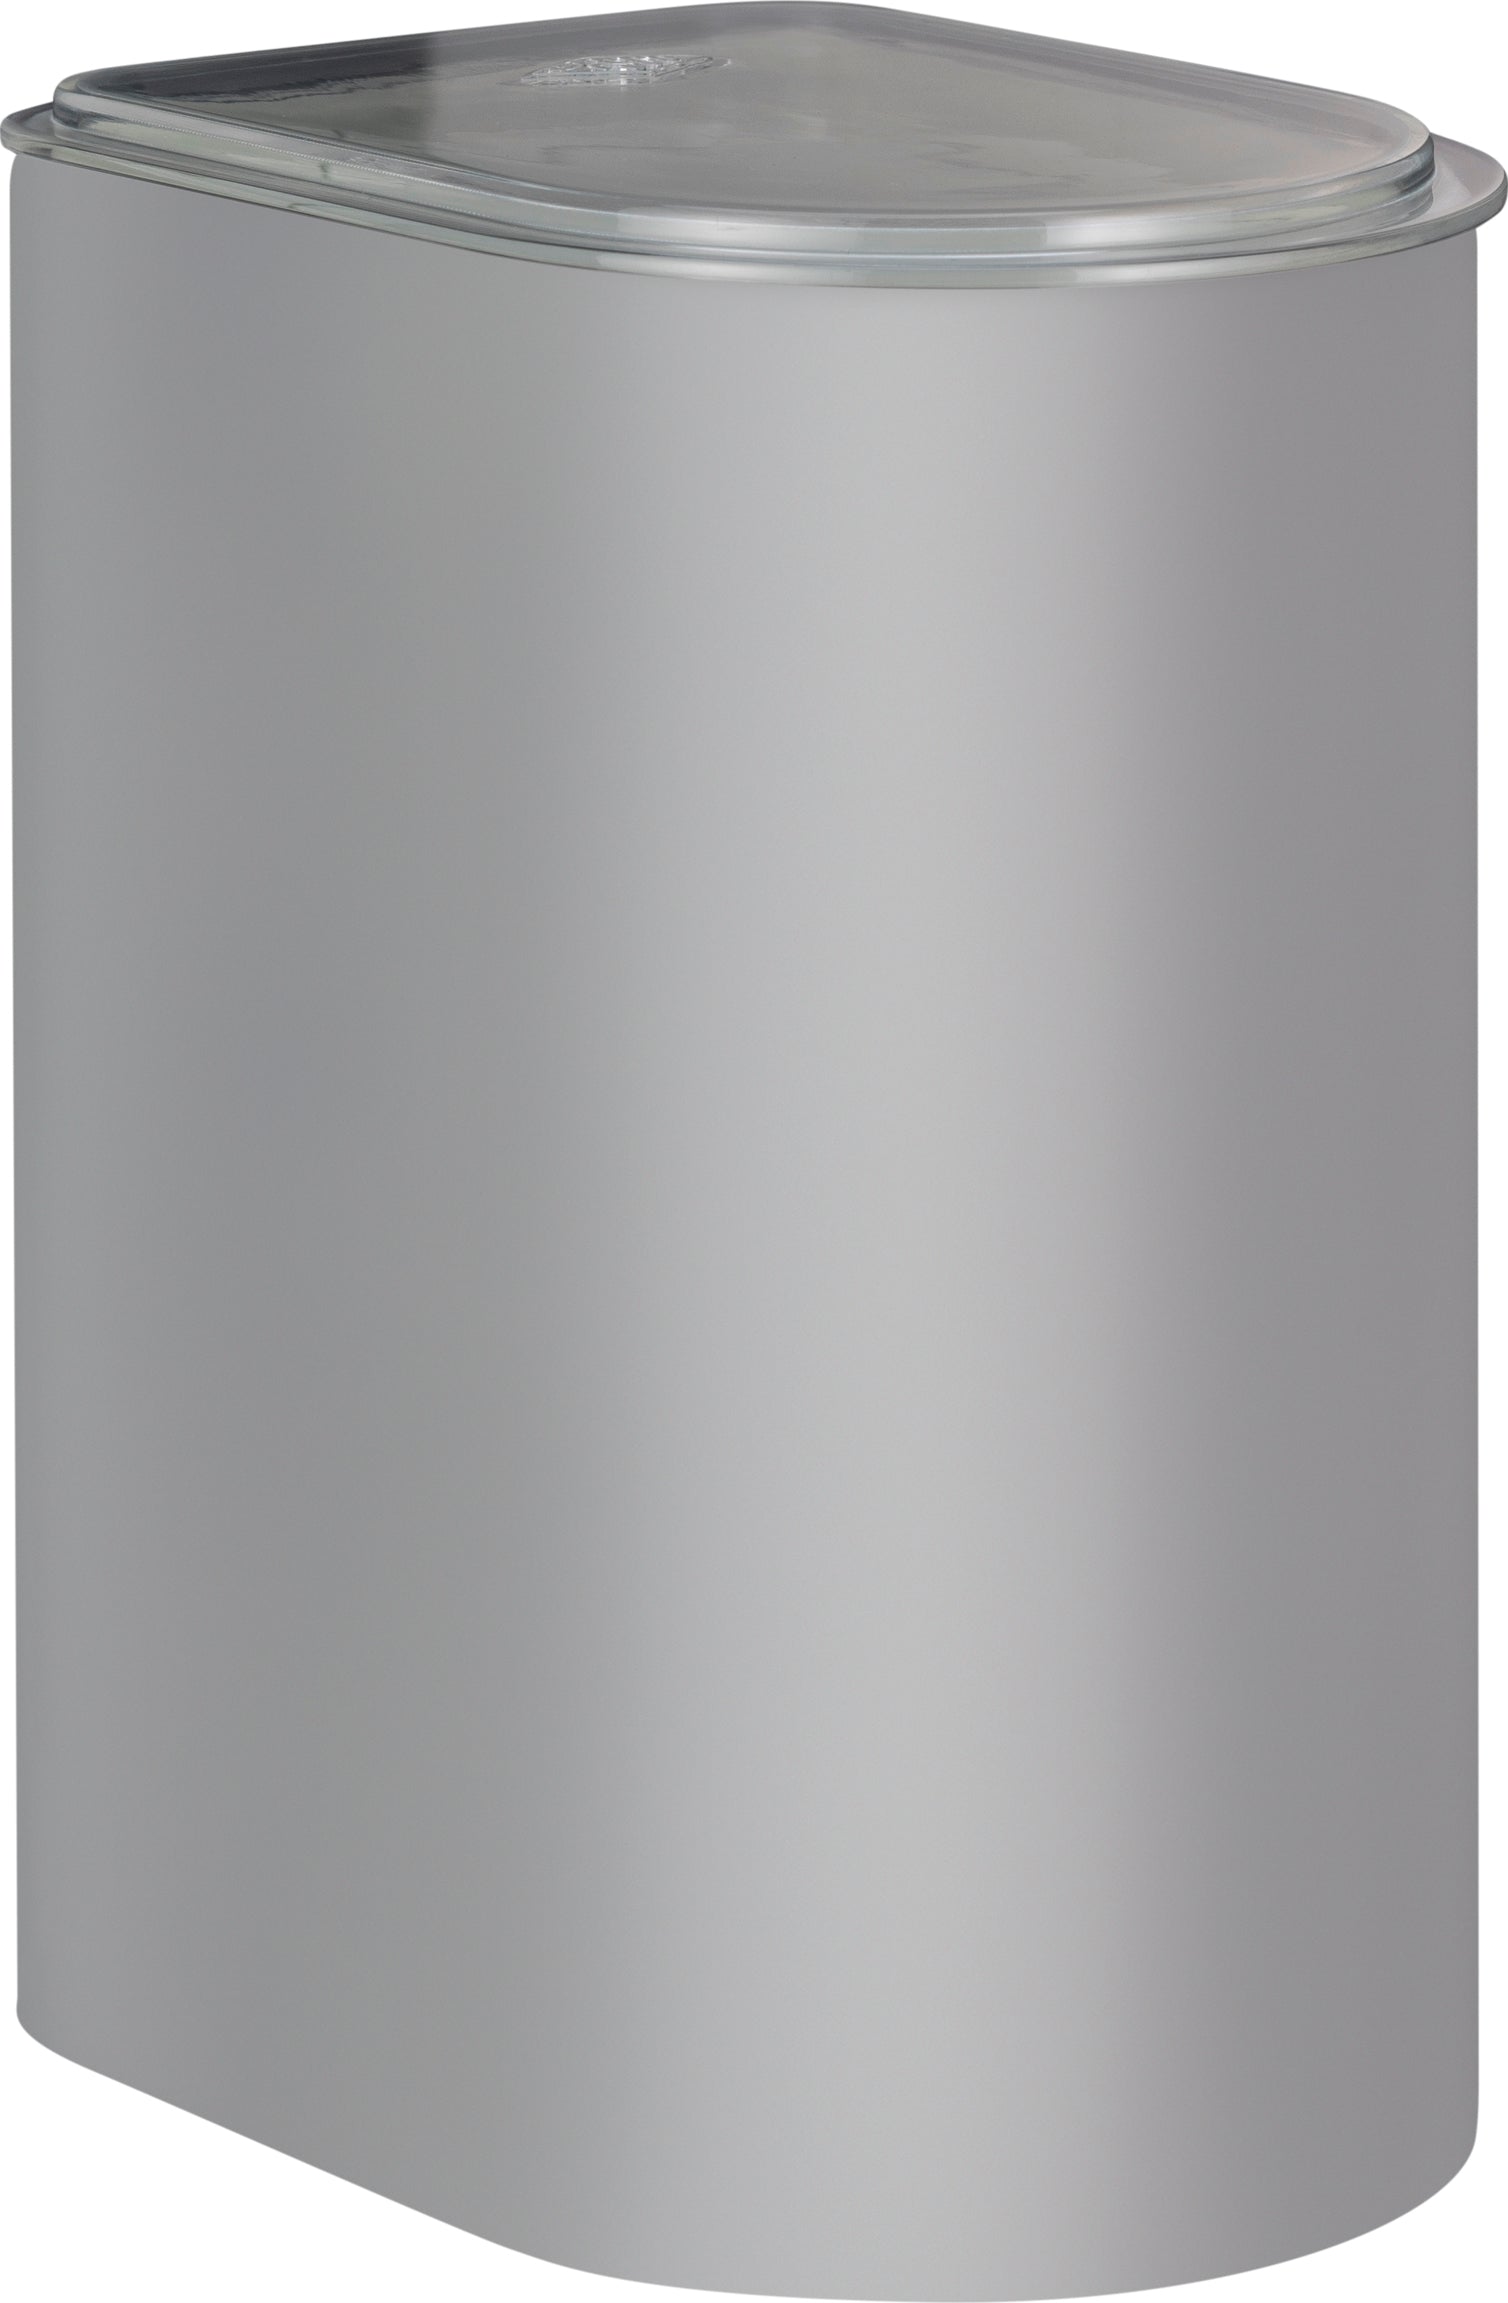 Wesco kanystr 3 litr s akrylovým víkem, chladný šedý matný